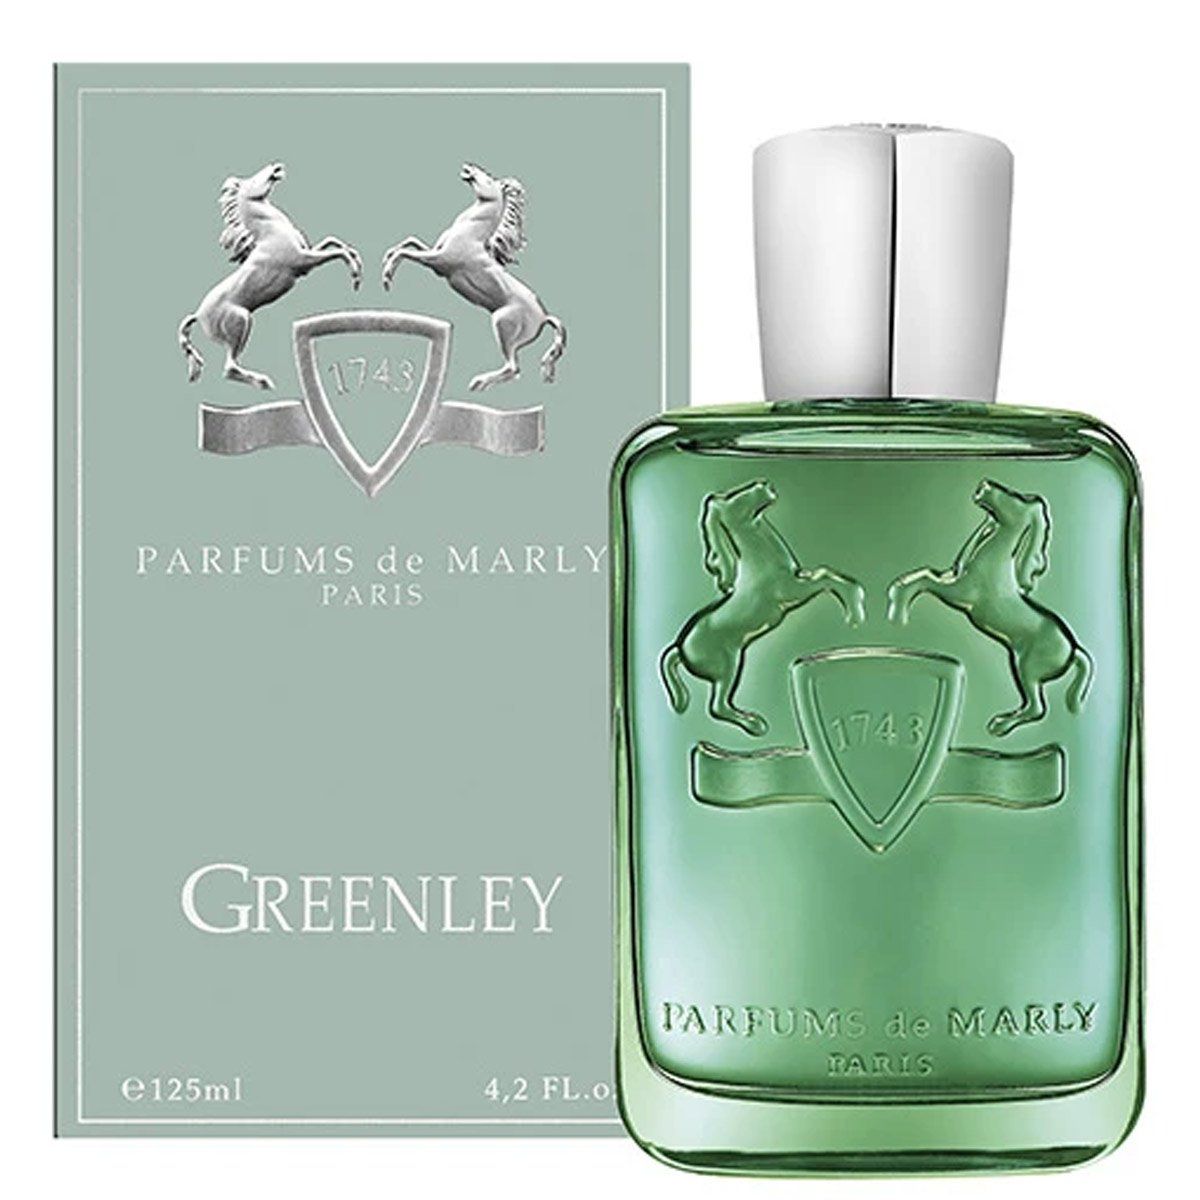  Parfums de Marly Greenley 